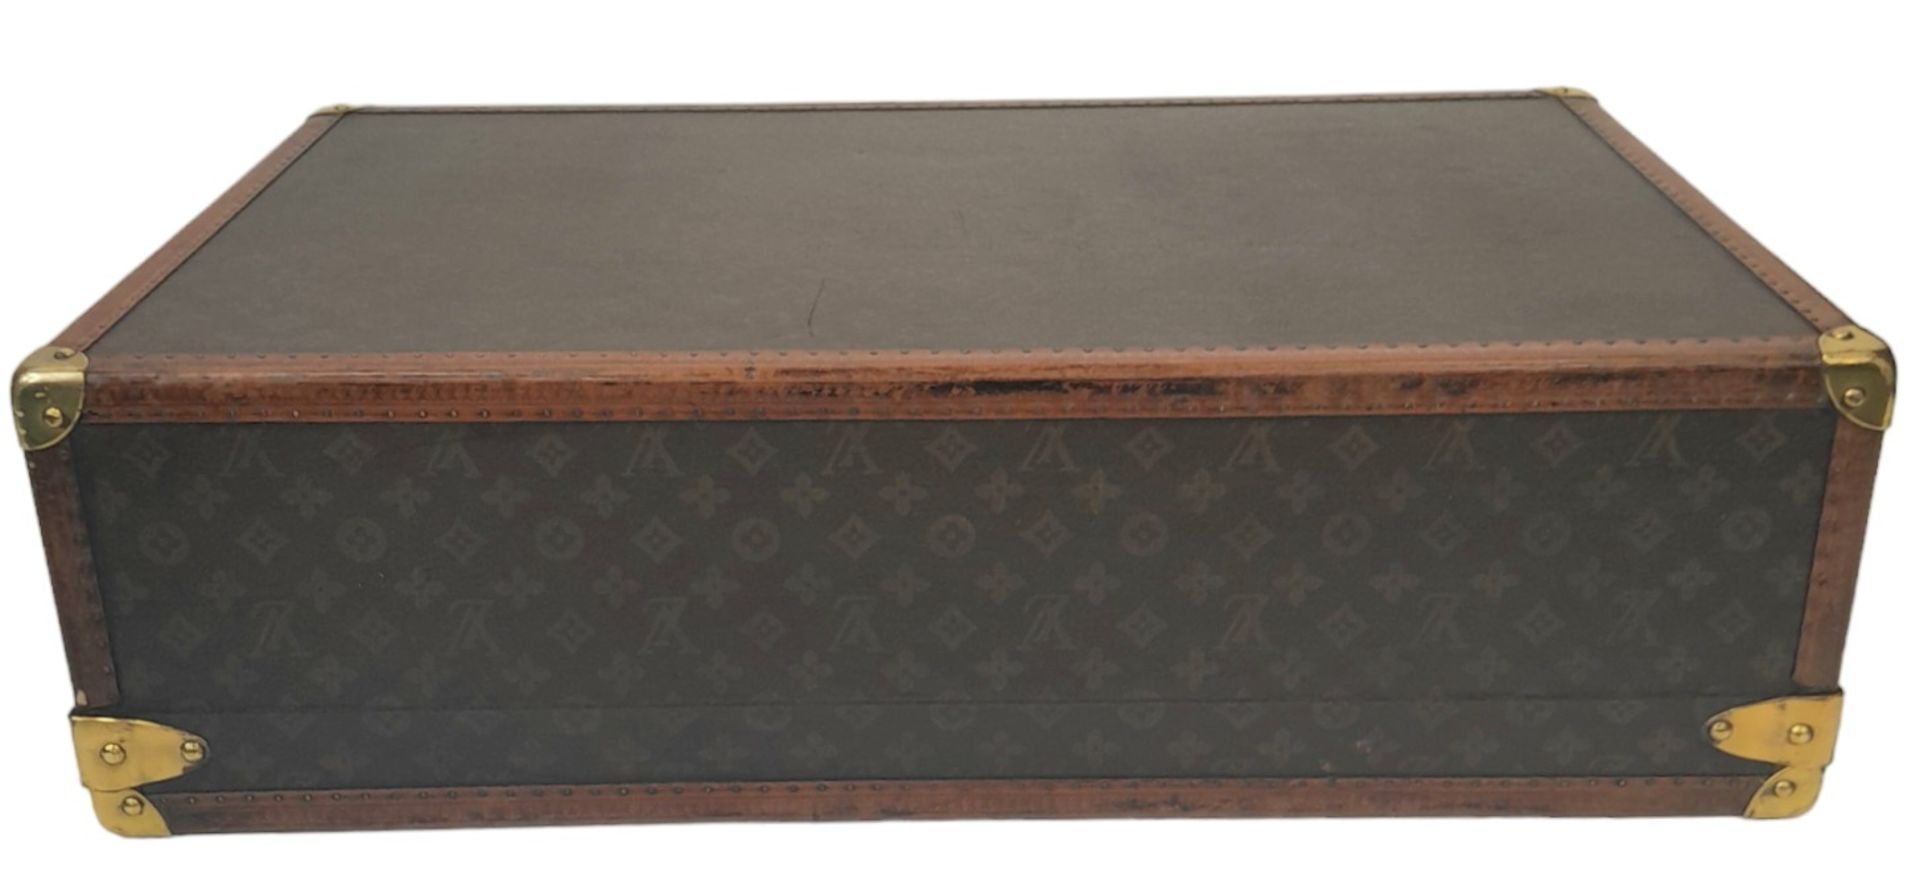 A Vintage Possibly Antique Louis Vuitton Trunk/Hard Suitcase. Canvas monogram LV exterior with - Bild 3 aus 16